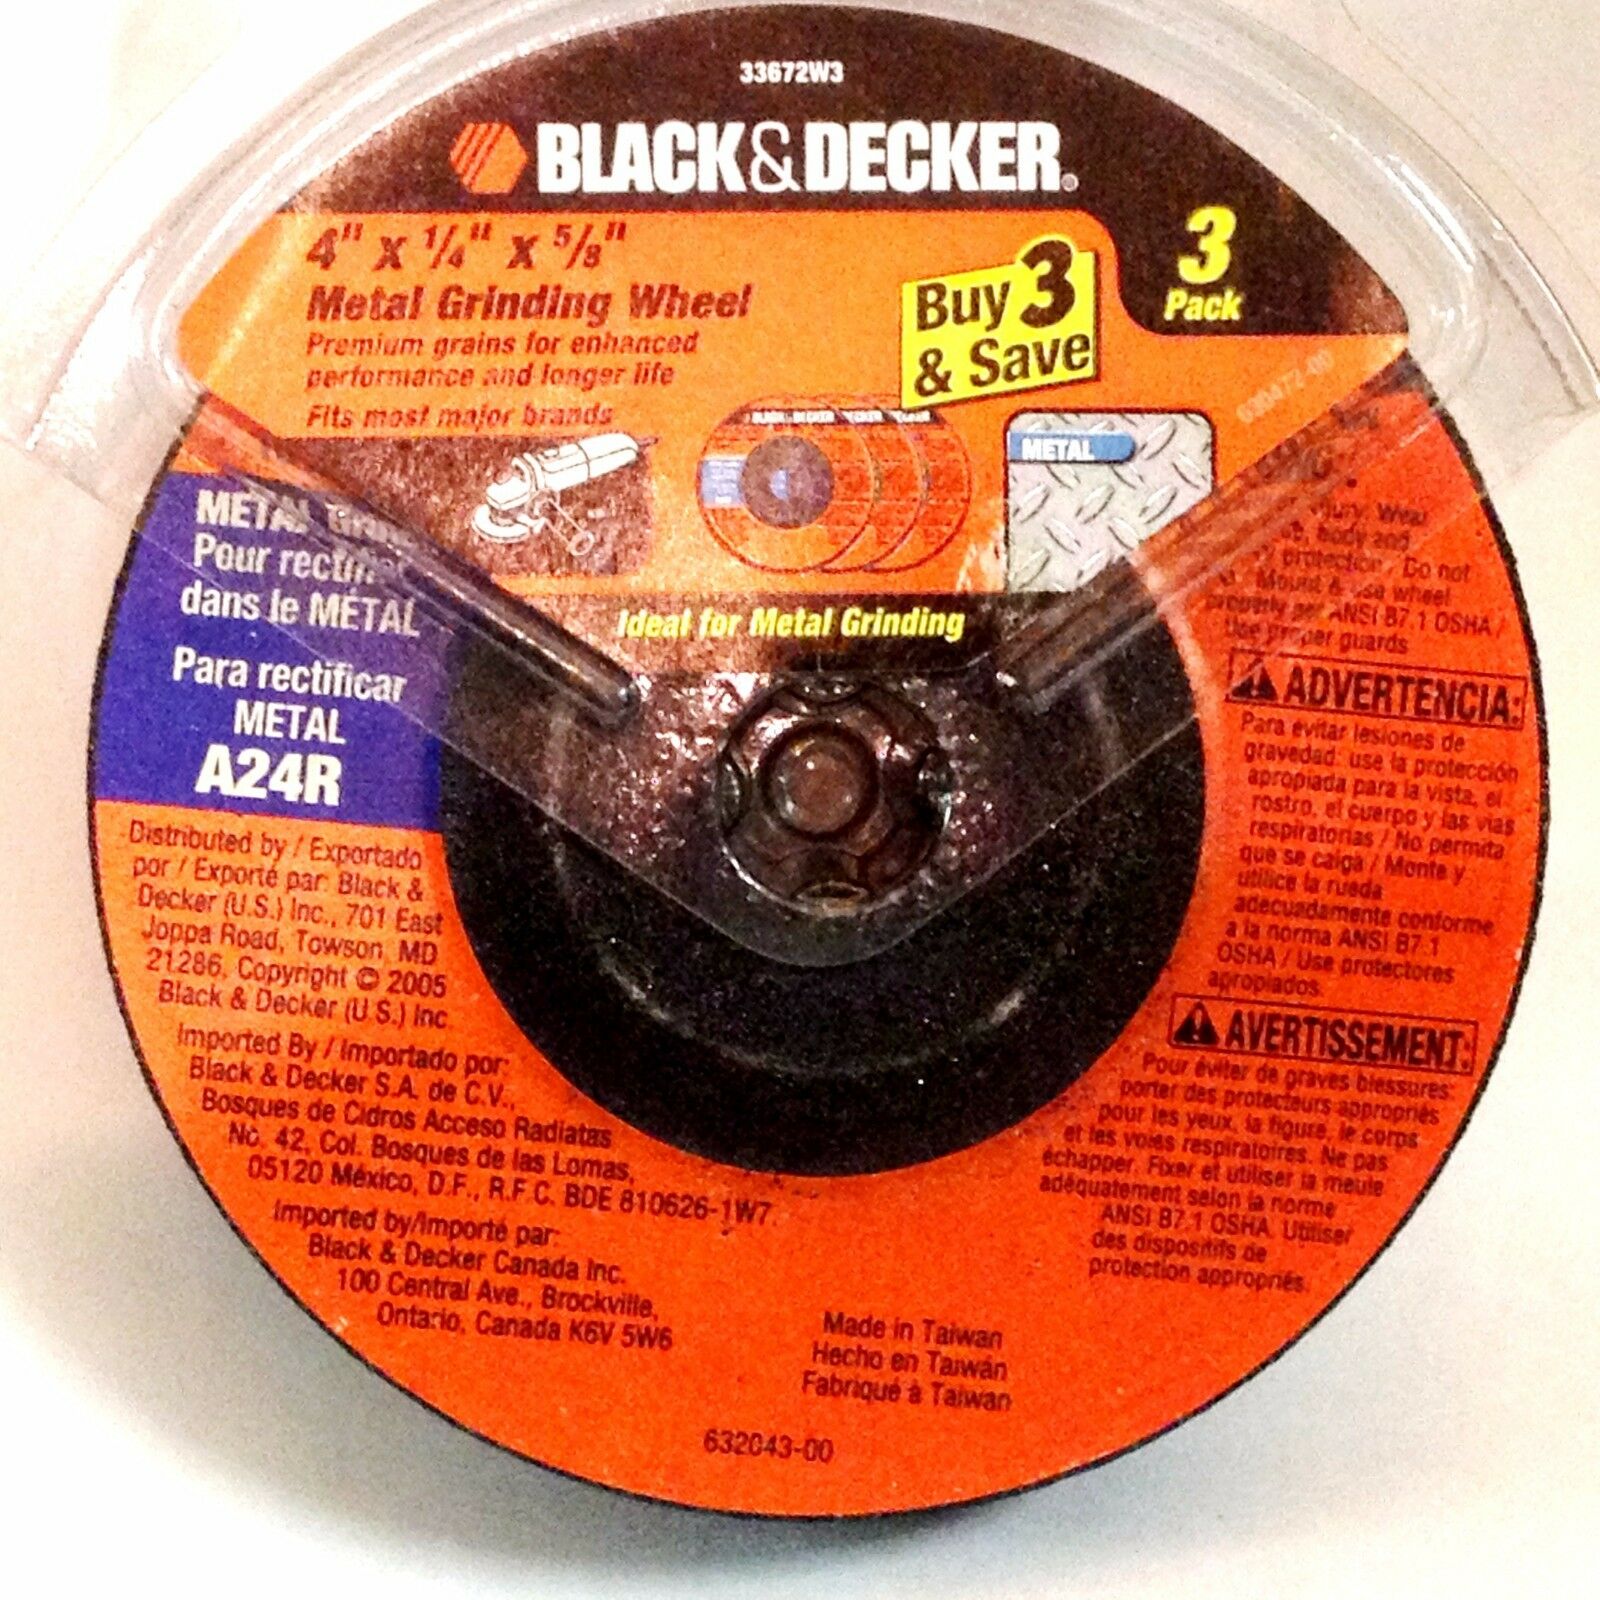 Black & Decker 33672W3  4" x 1/4" x 5/8" Grinding Wheel 3PK